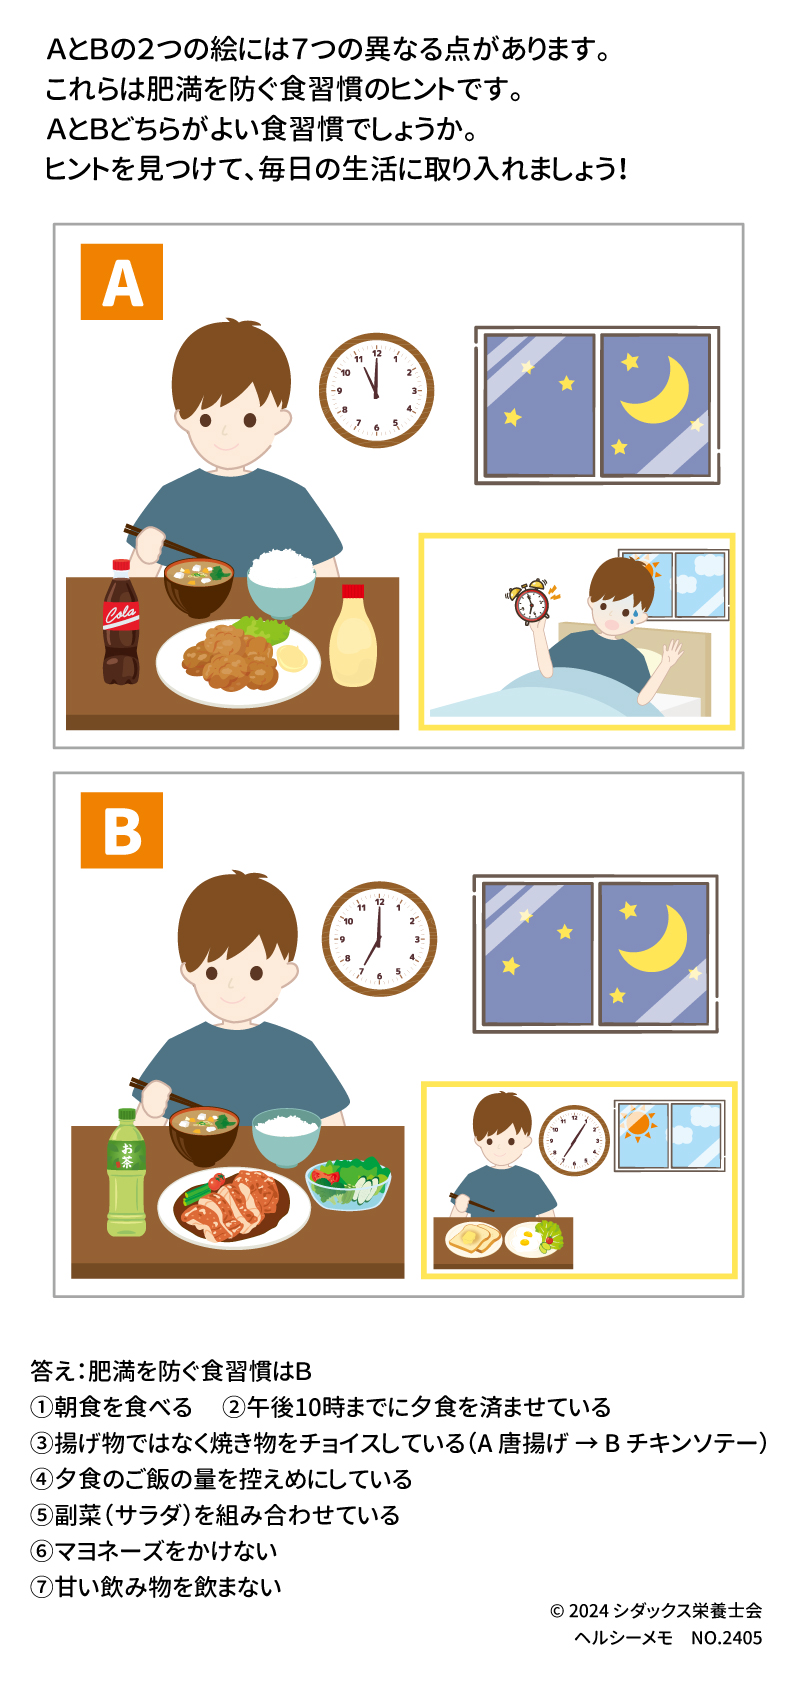 ＡとＢの２つの絵には７つの異なる点があります。これらは肥満を防ぐ食習慣のヒントです。 ＡとＢどちらがよい食習慣でしょうか。ヒントを見つけて、毎日の生活に取り入れましょう！ 答え：肥満を防ぐ食習慣はＢ ①朝食を食べる　 ②午後10時までに夕食を済ませている ③揚げ物ではなく焼き物をチョイスしている（A 唐揚げ → B チキンソテー） ④夕食のご飯の量を控えめにしている　⑤副菜（サラダ）を組み合わせている ⑥マヨネーズをかけない　 ⑦甘い飲み物を飲まない